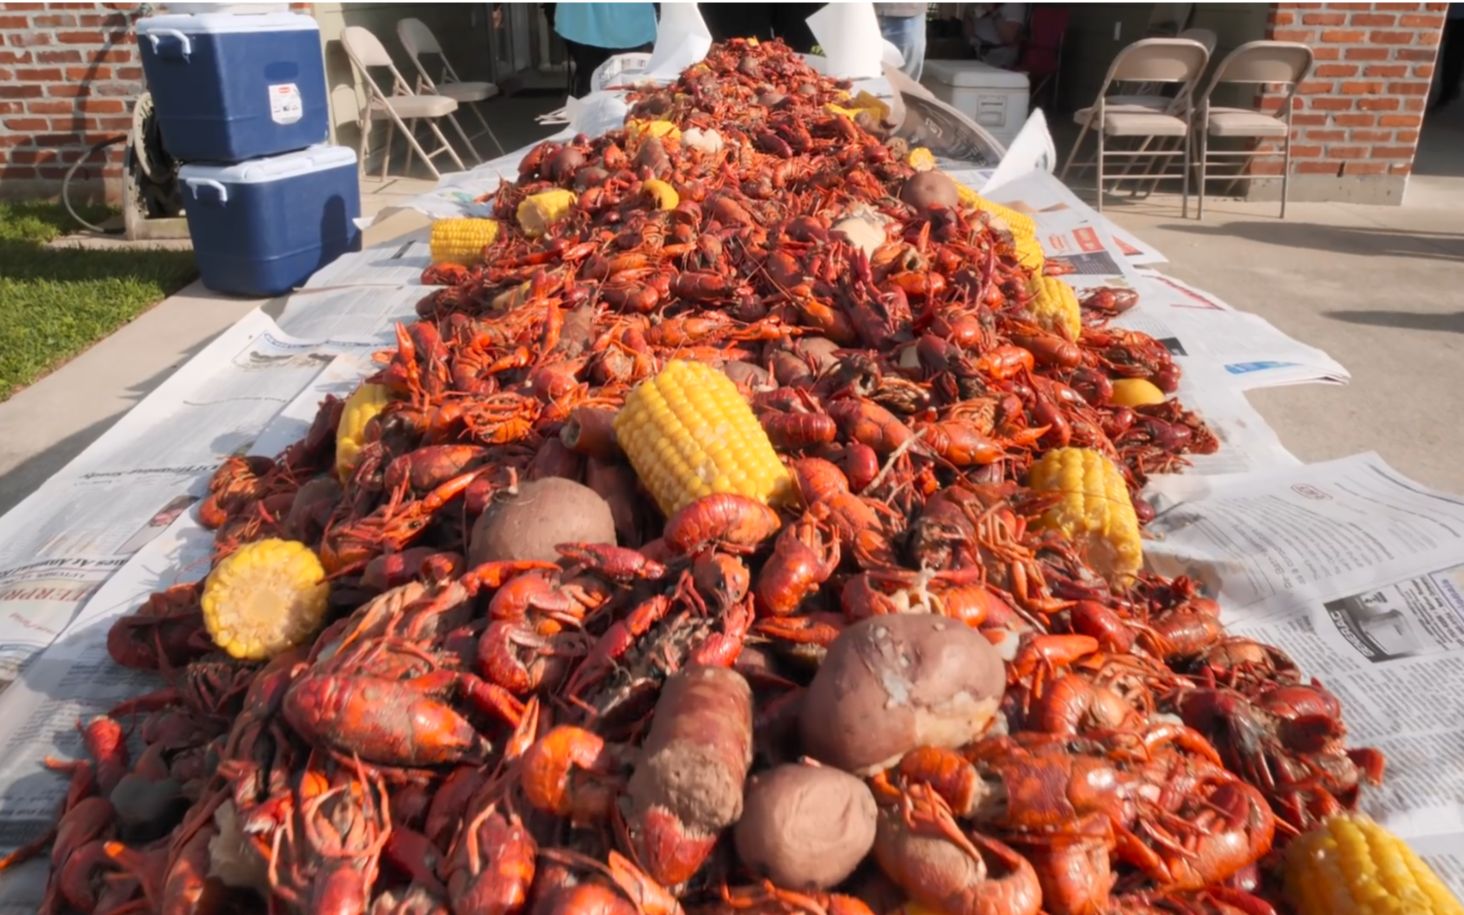 事实证明美国人是吃小龙虾的-煮10,000只小龙虾!!! 史诗般的路易斯安那州小龙虾盛宴